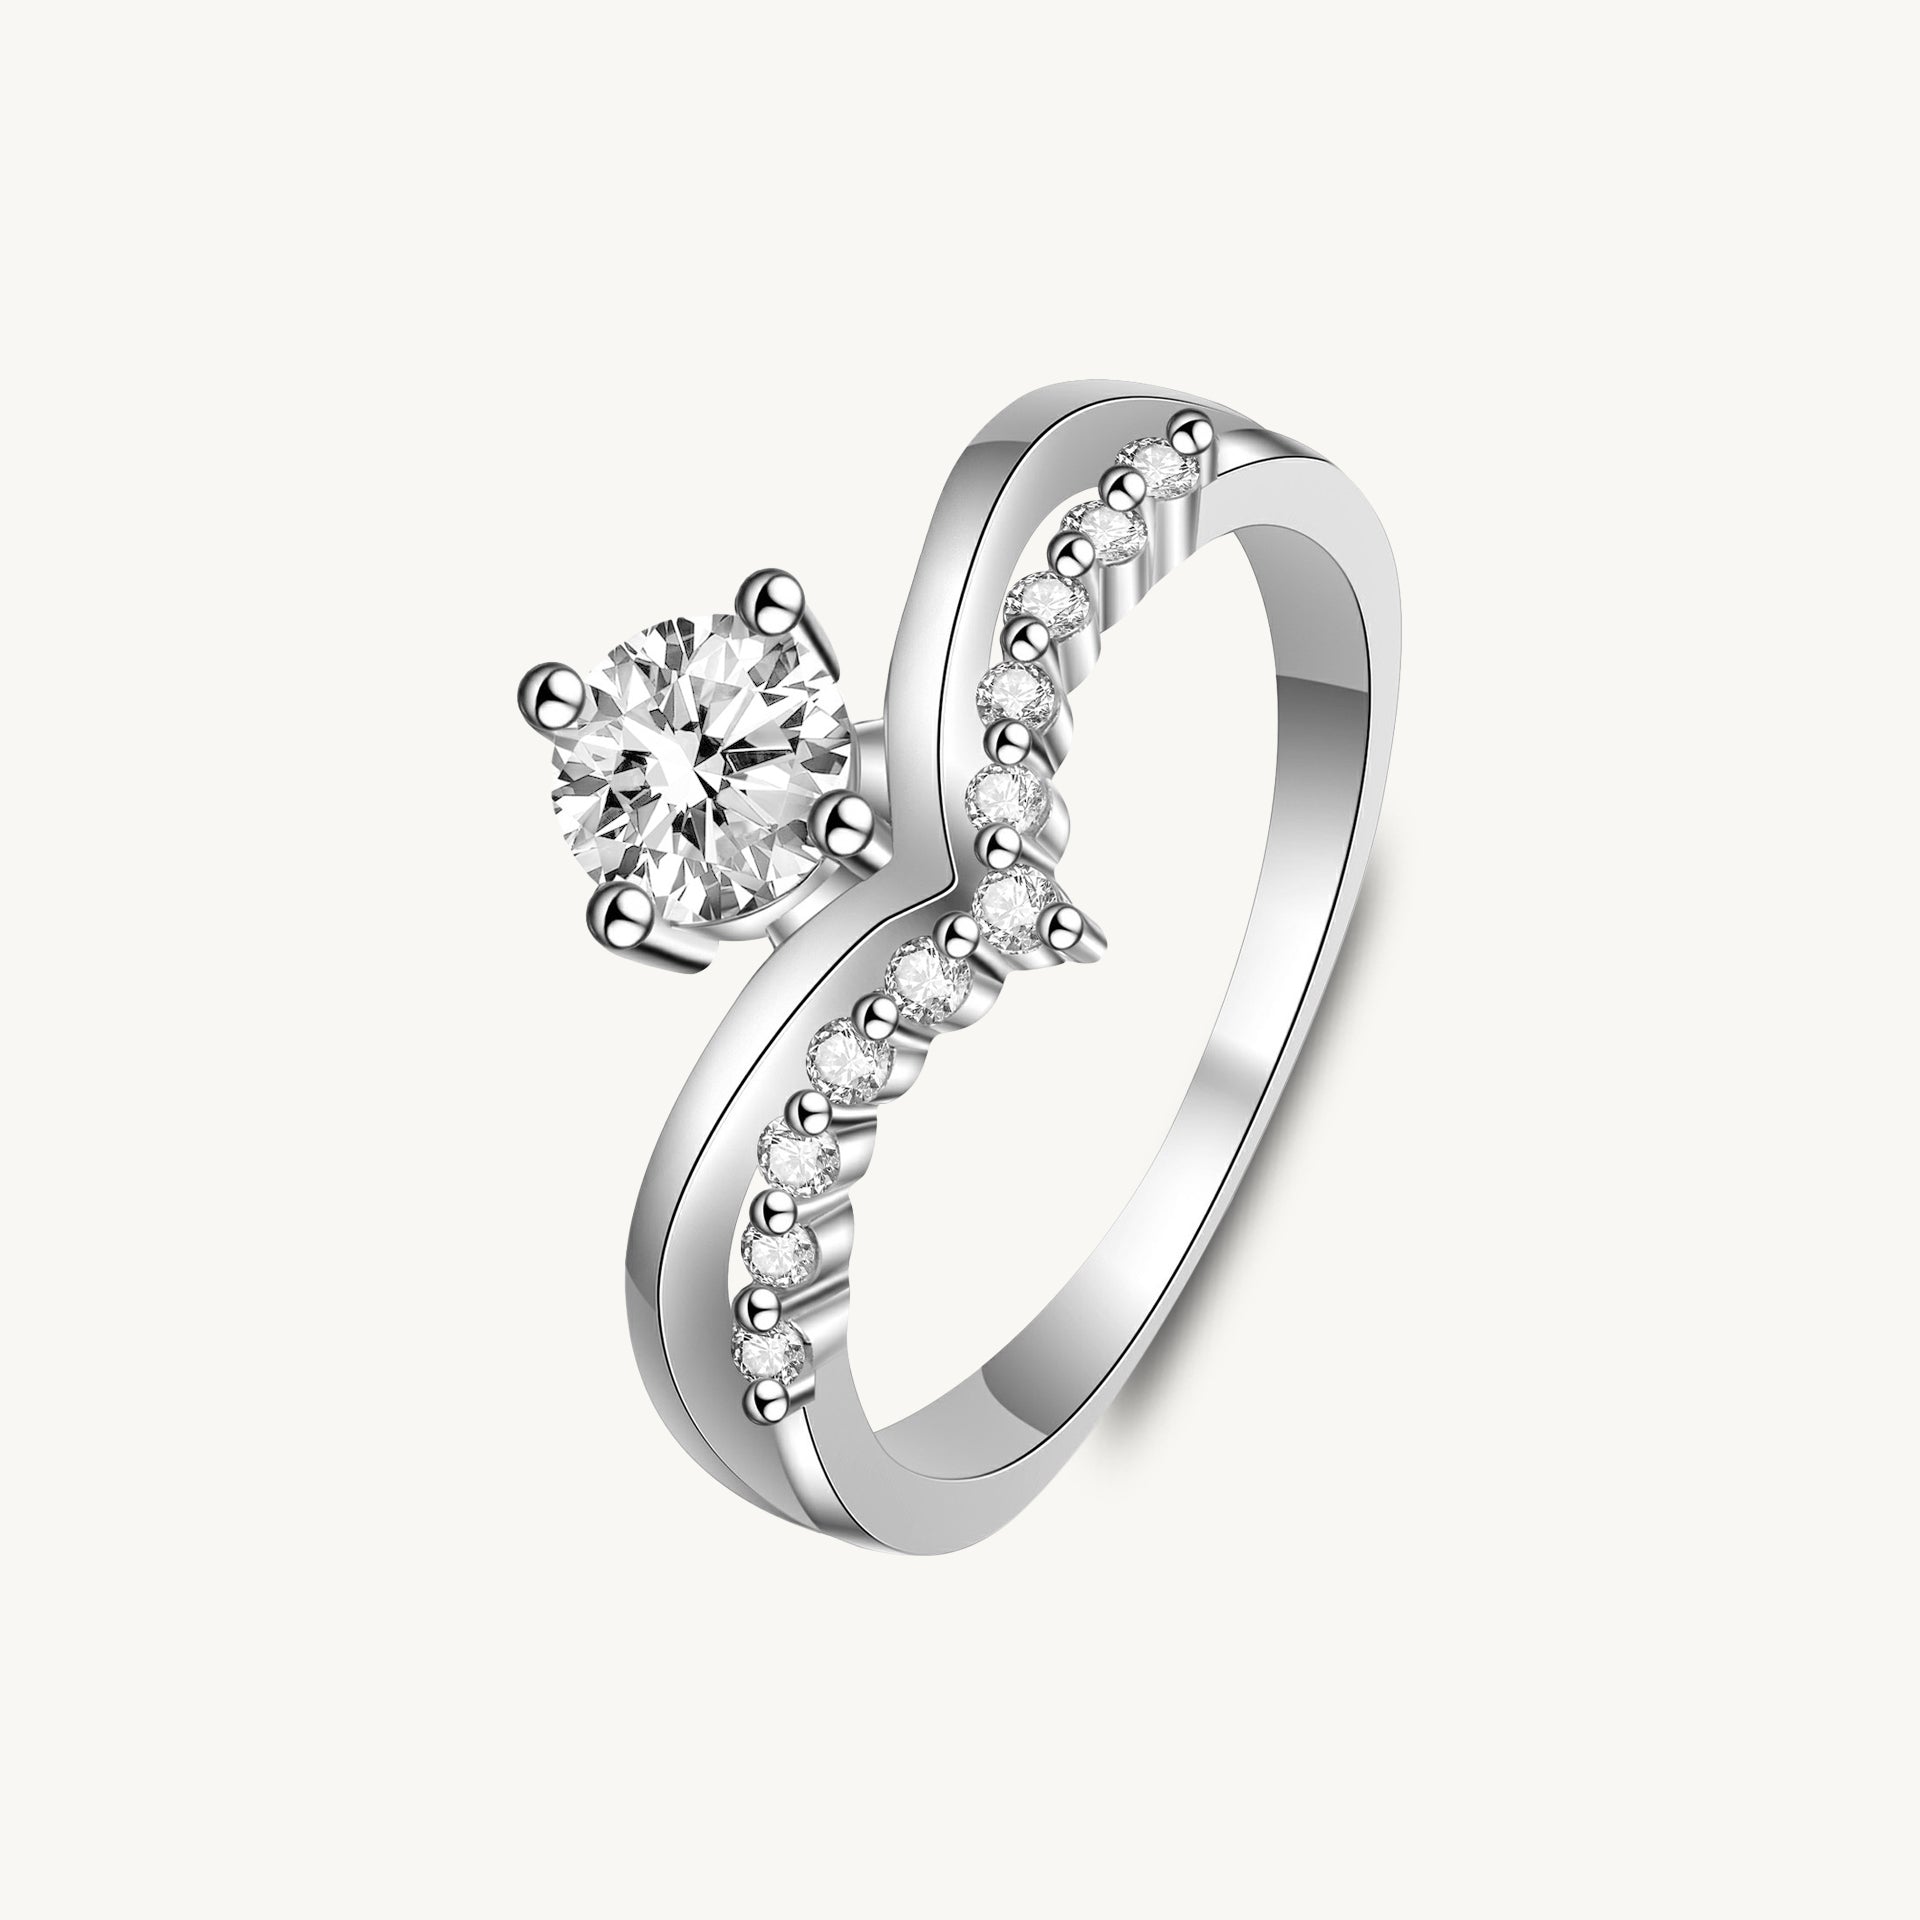 The June Emerald Moissanite Diamond Engagement Ring